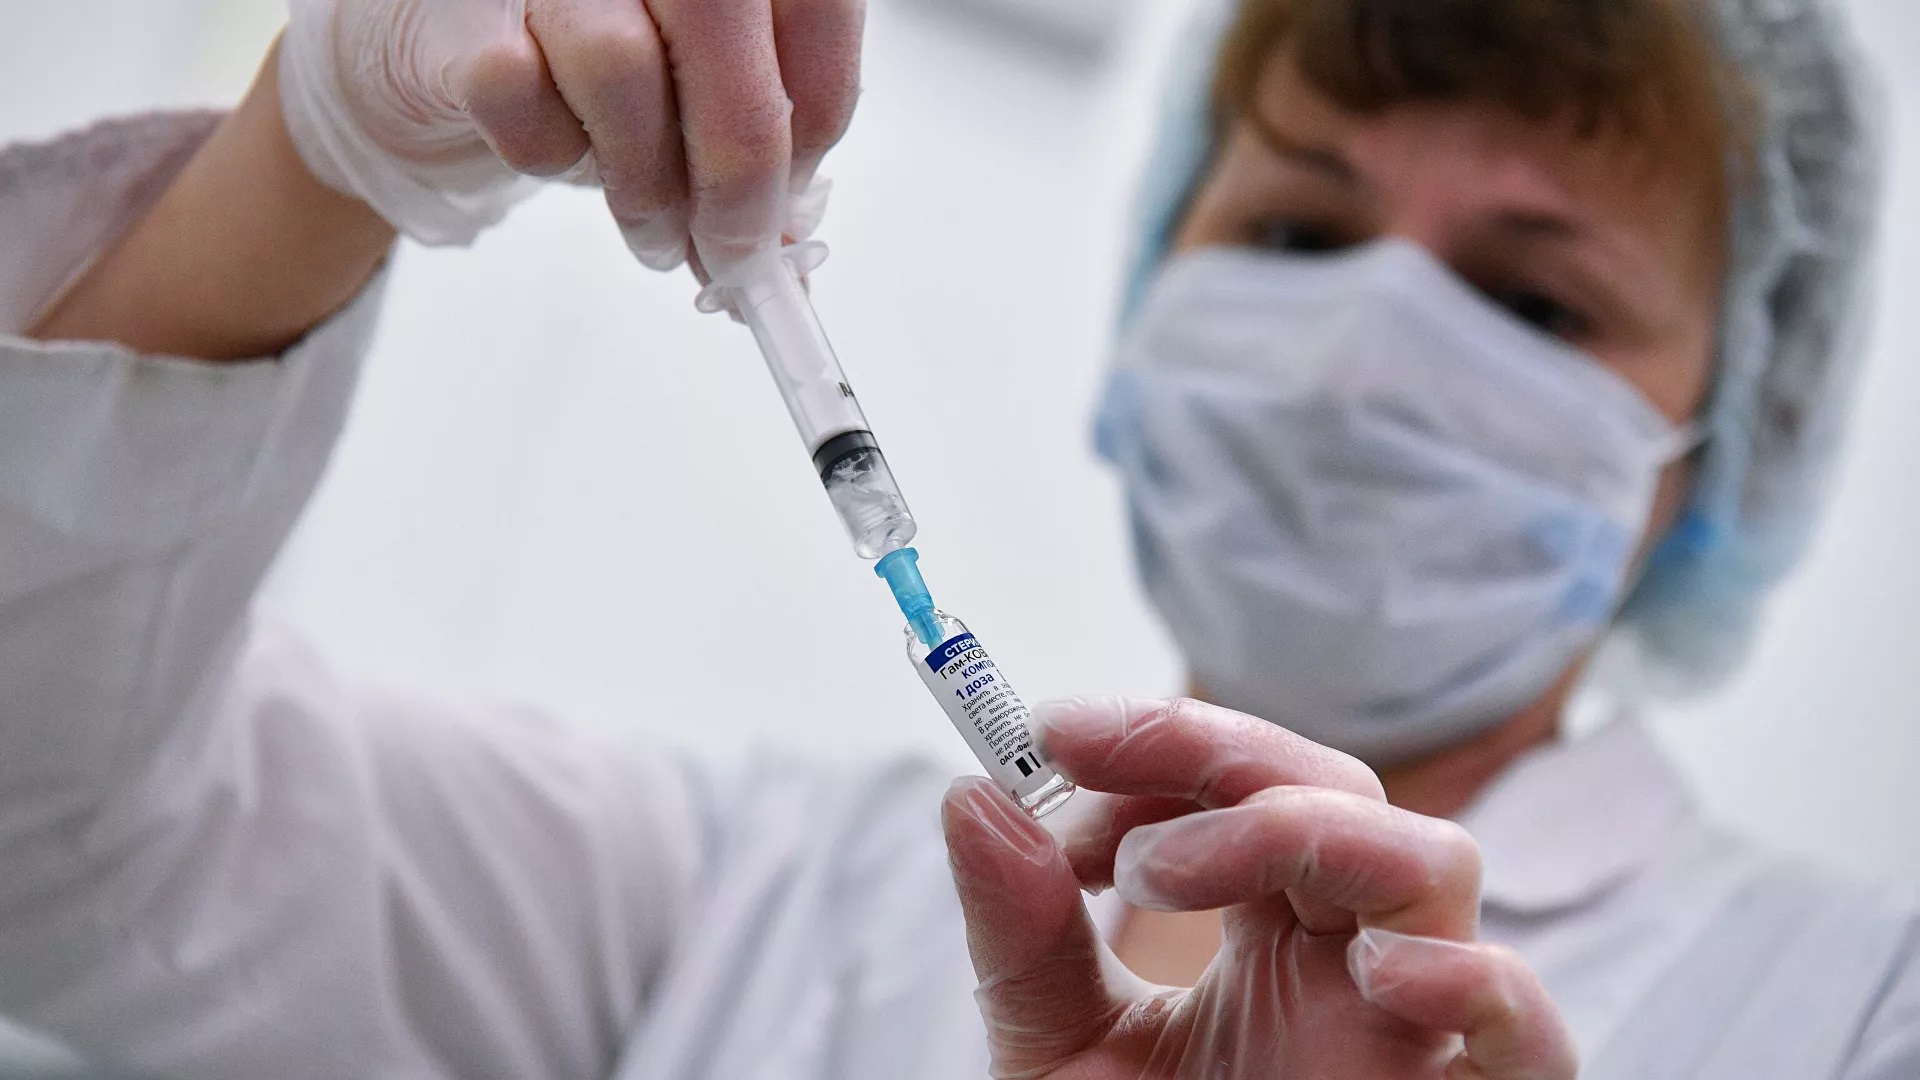 “Βολές” από την Ρωσία στην Δύση για τους εμβολιασμούς κάθε 3 μήνες: “Είναι σαν διαφήμιση ενός μπαγιάτικου προϊόντος»